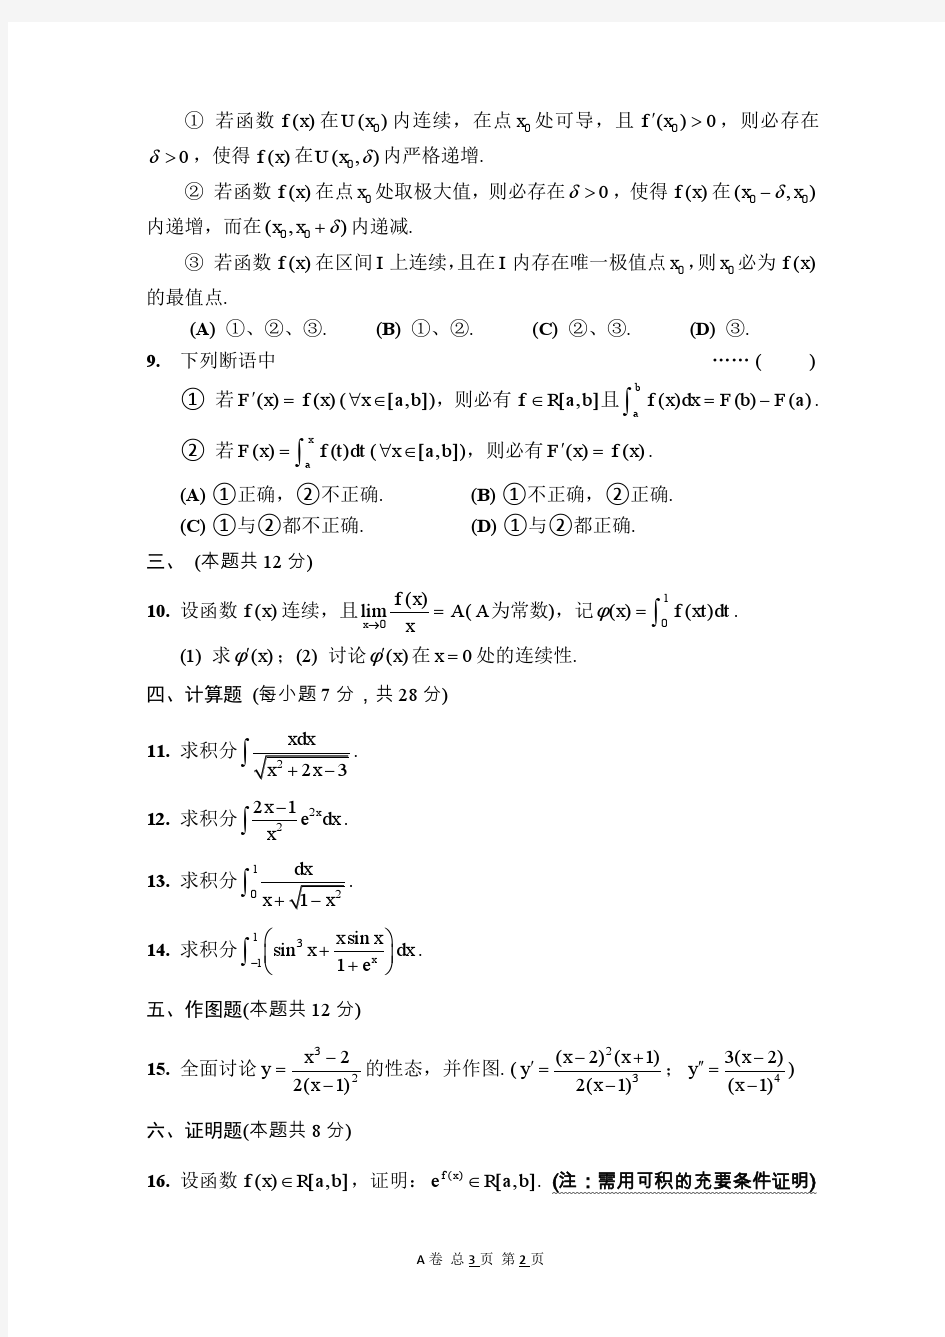 上海交大2014级数学分析第1学期期终试卷